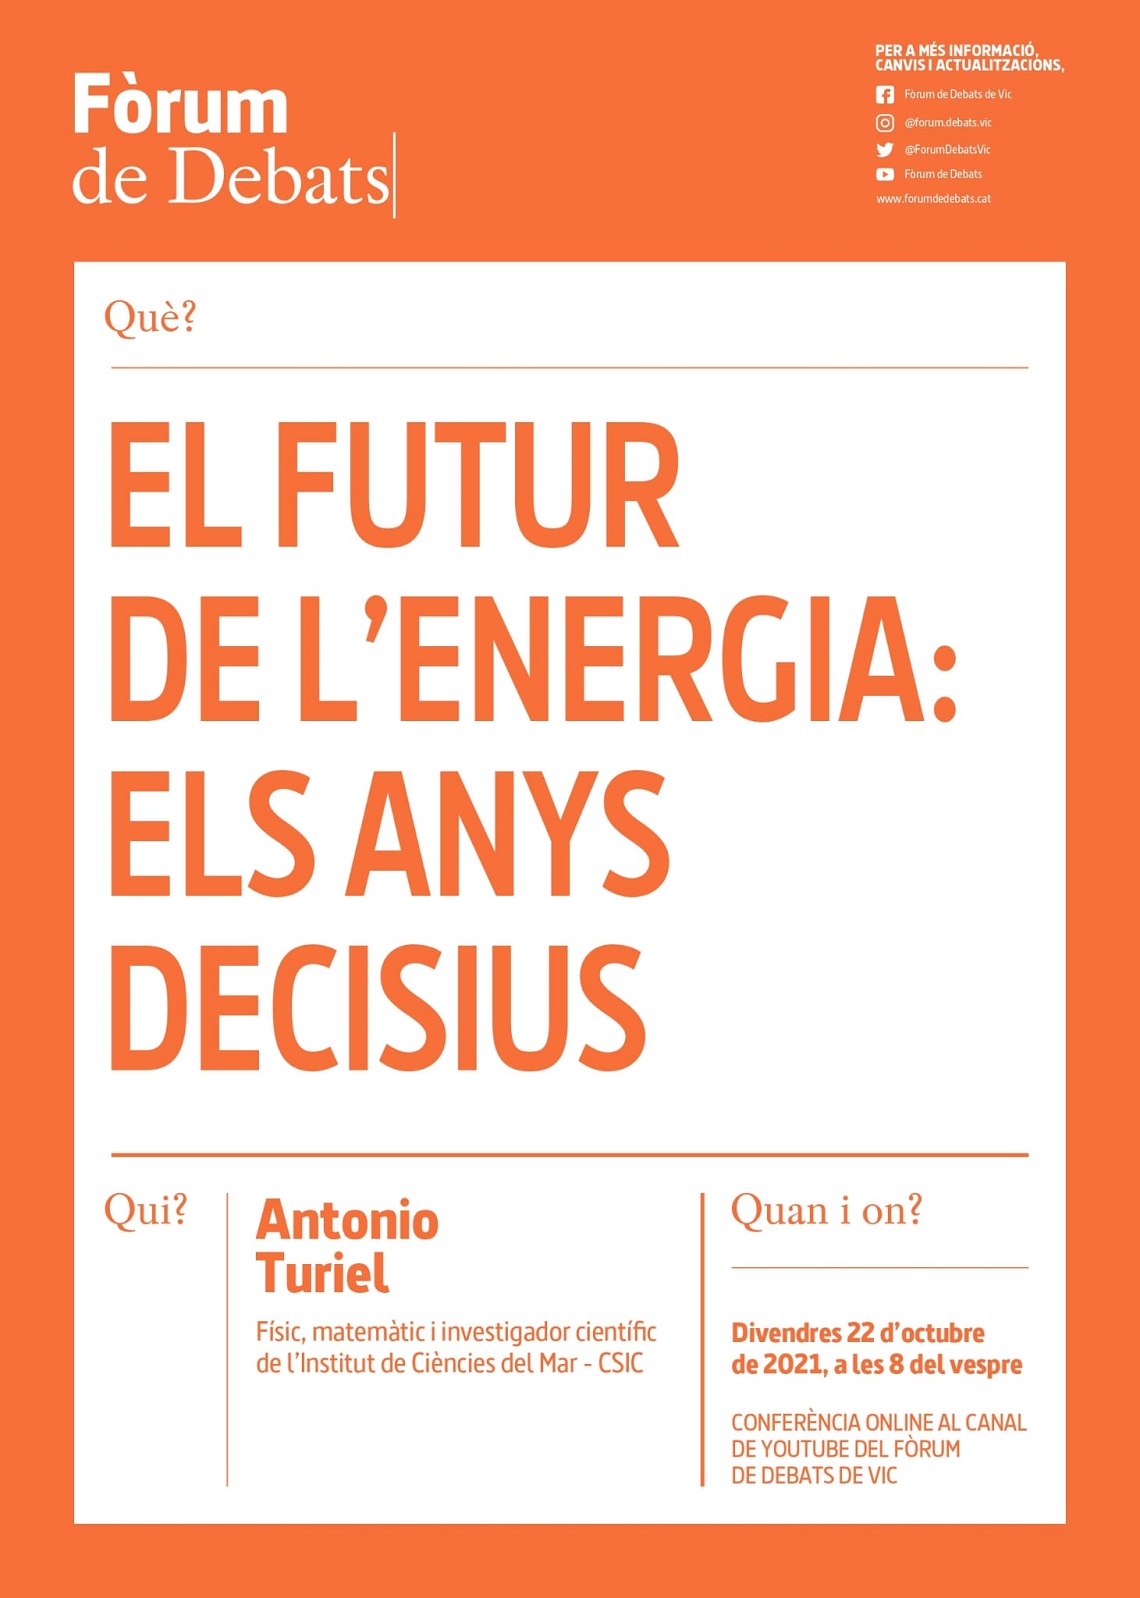 El futur de l'energia: els anys decisius. Per Antonio Turiel. Divendres 22 d'octubre a les 8, al canal Youtube del Fòrum de Debats